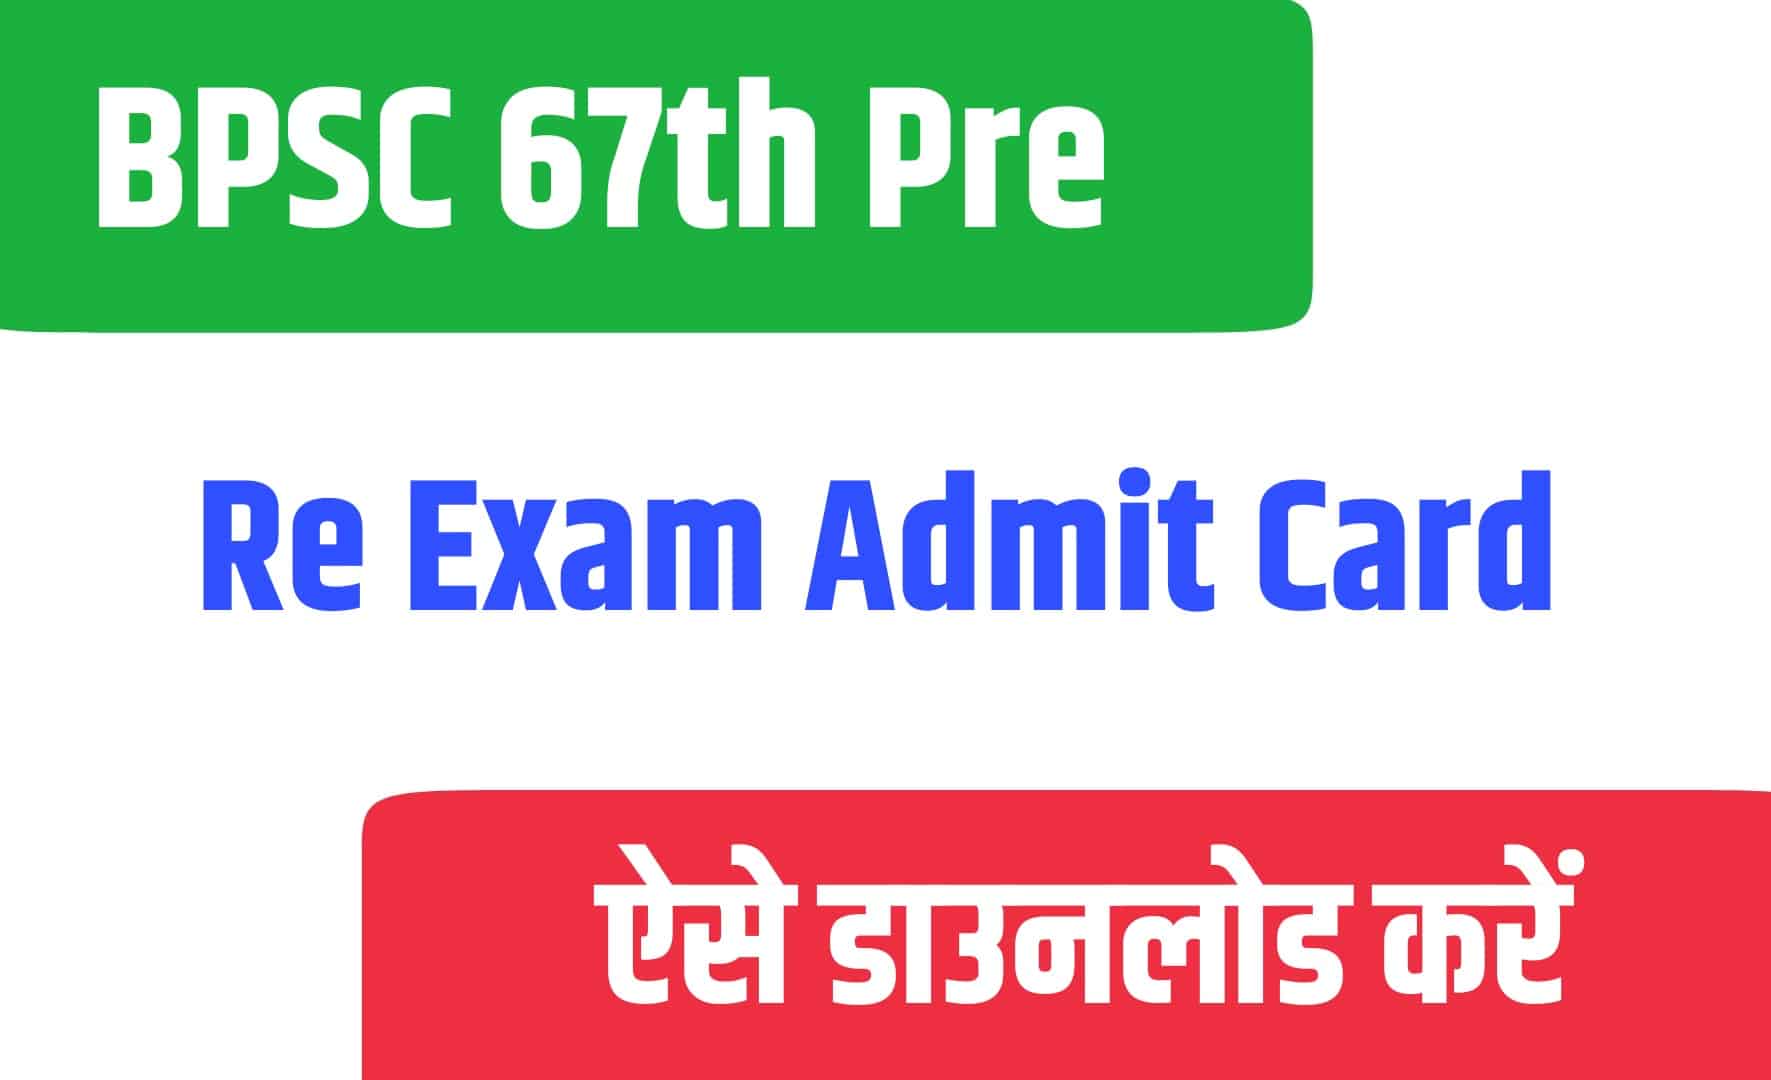 BPSC 67th Pre Re Exam Admit Card | बीपीएससी 67th प्री परीक्षा एडमिट कार्ड जारी